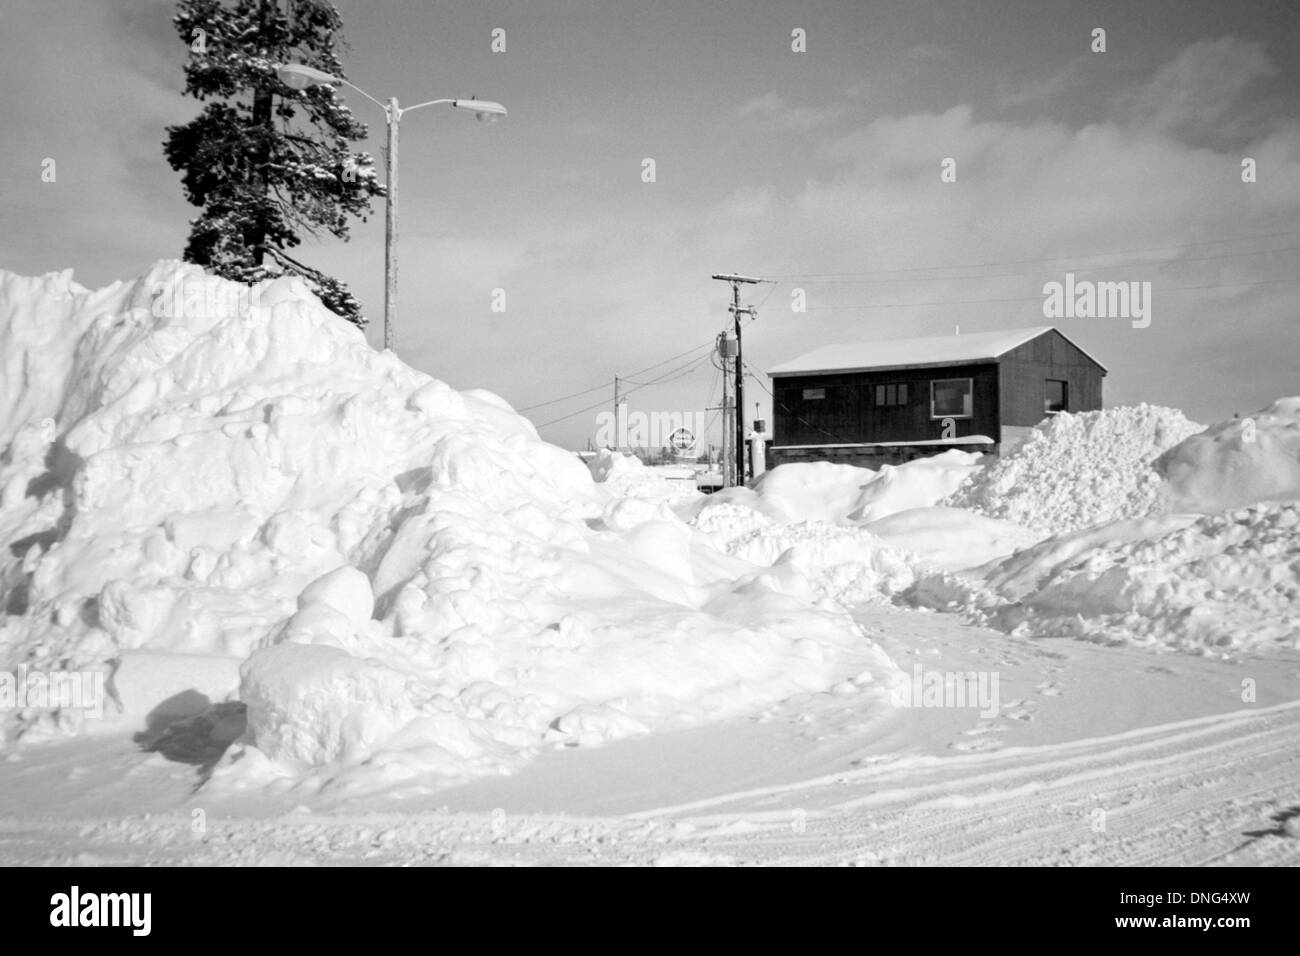 Maison debout parmi de grands bancs de neige dans la région de West Yellowstone montana usa Banque D'Images